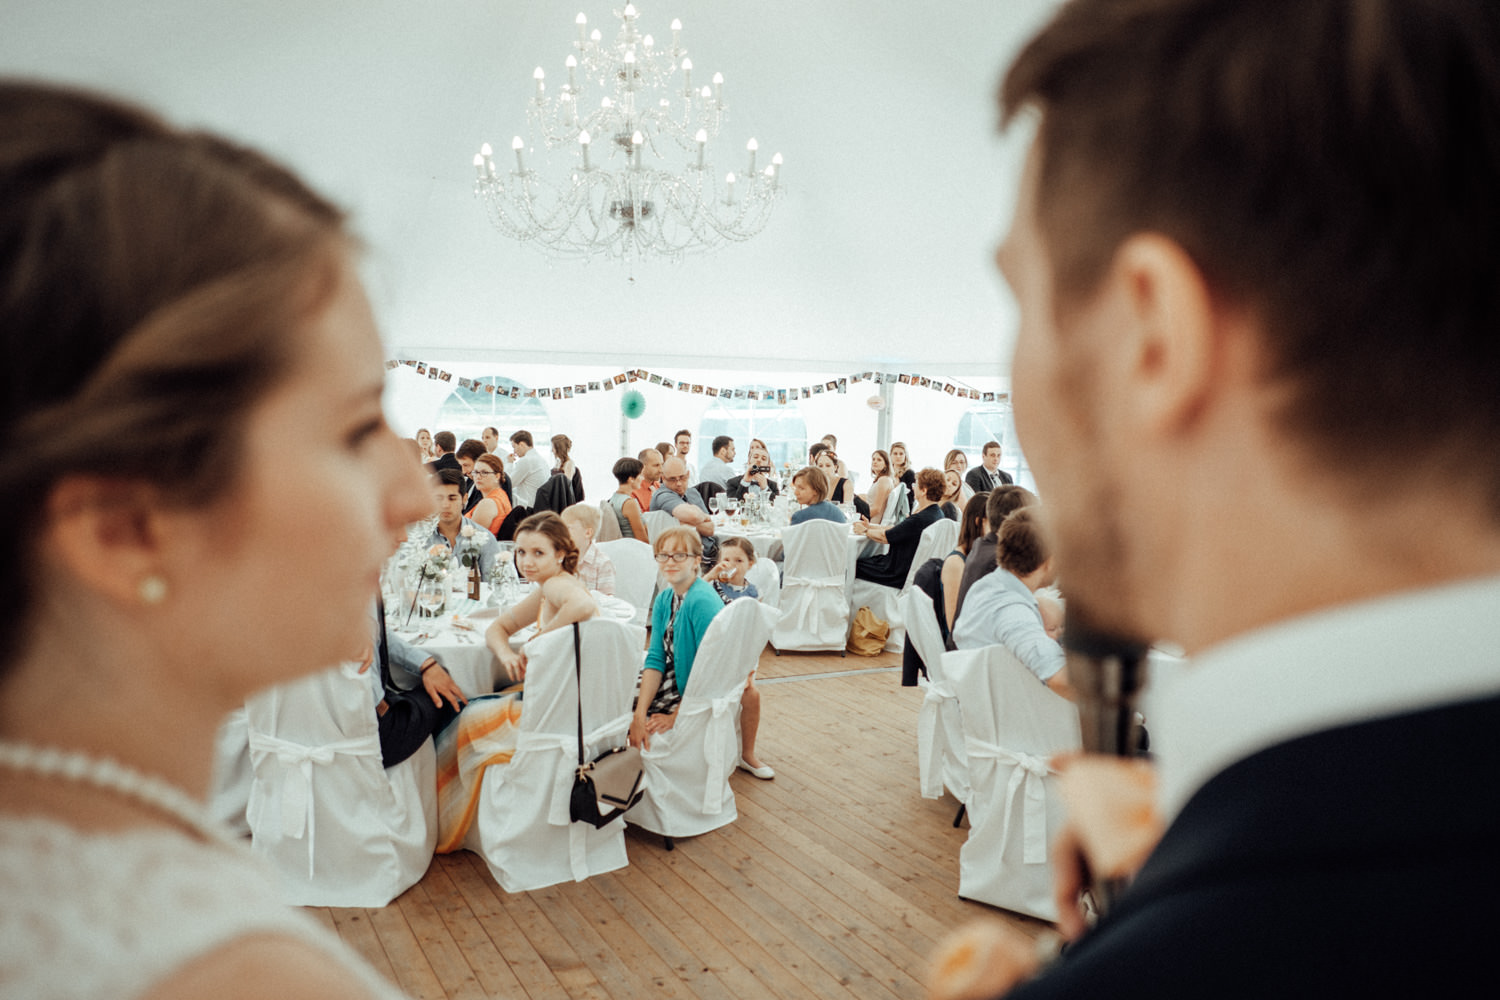 Zelthochzeit-Inspiration-Hochzeitsreportage-natürlich-Hessenhof-Coburg-Oberfranken-Aachen-Hochzeitsfotograf-Kevin Biberbach-KEVIN Fotografie-Junebug-Hochzeitswahn-119.jpg